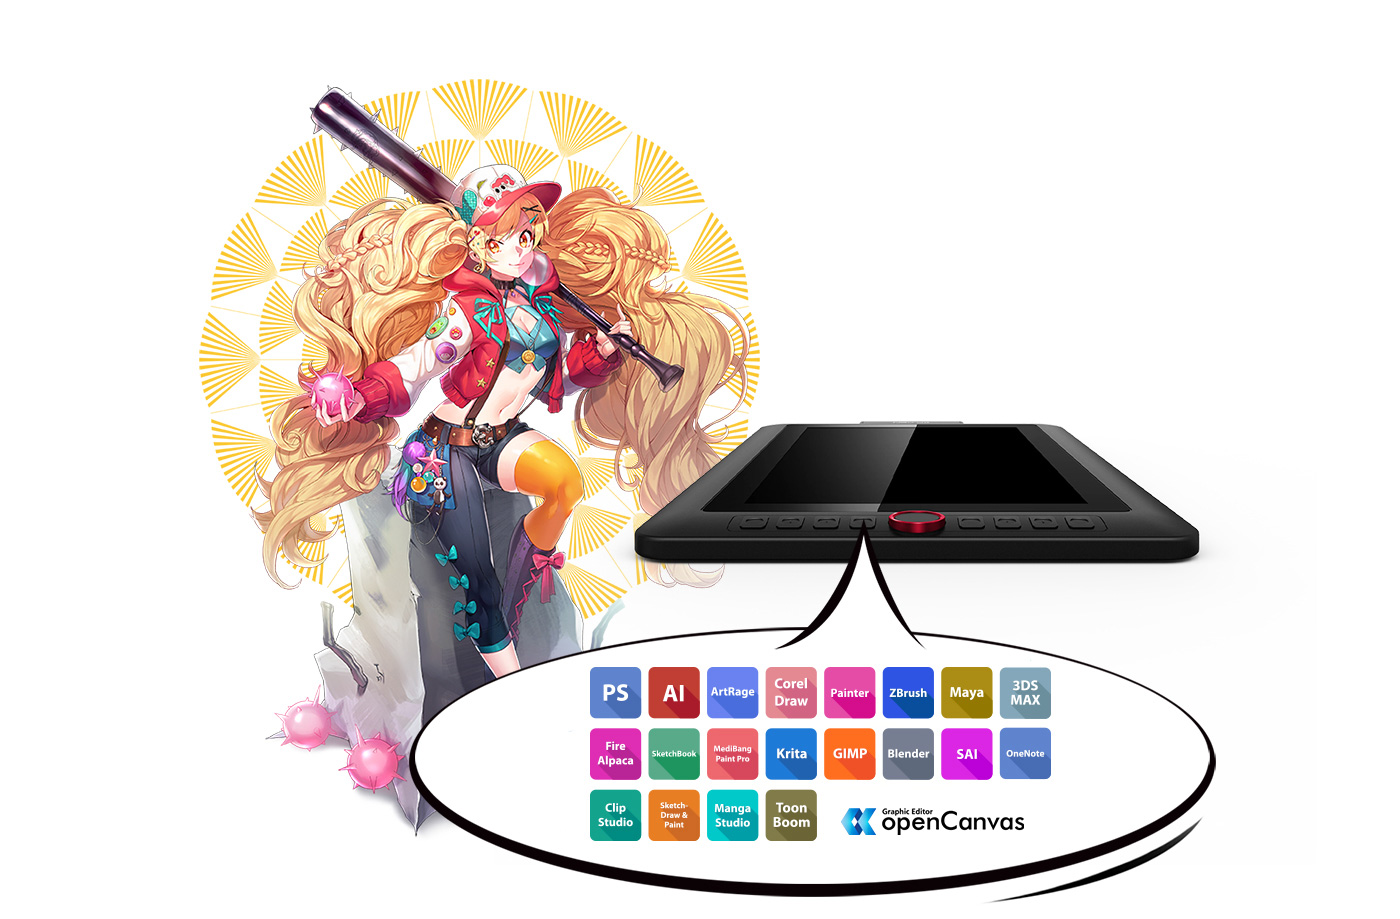 XP-Pen Artist 13.3 Pro Tableta incluye 1 creativa  Red Dial y 8  botones configurables